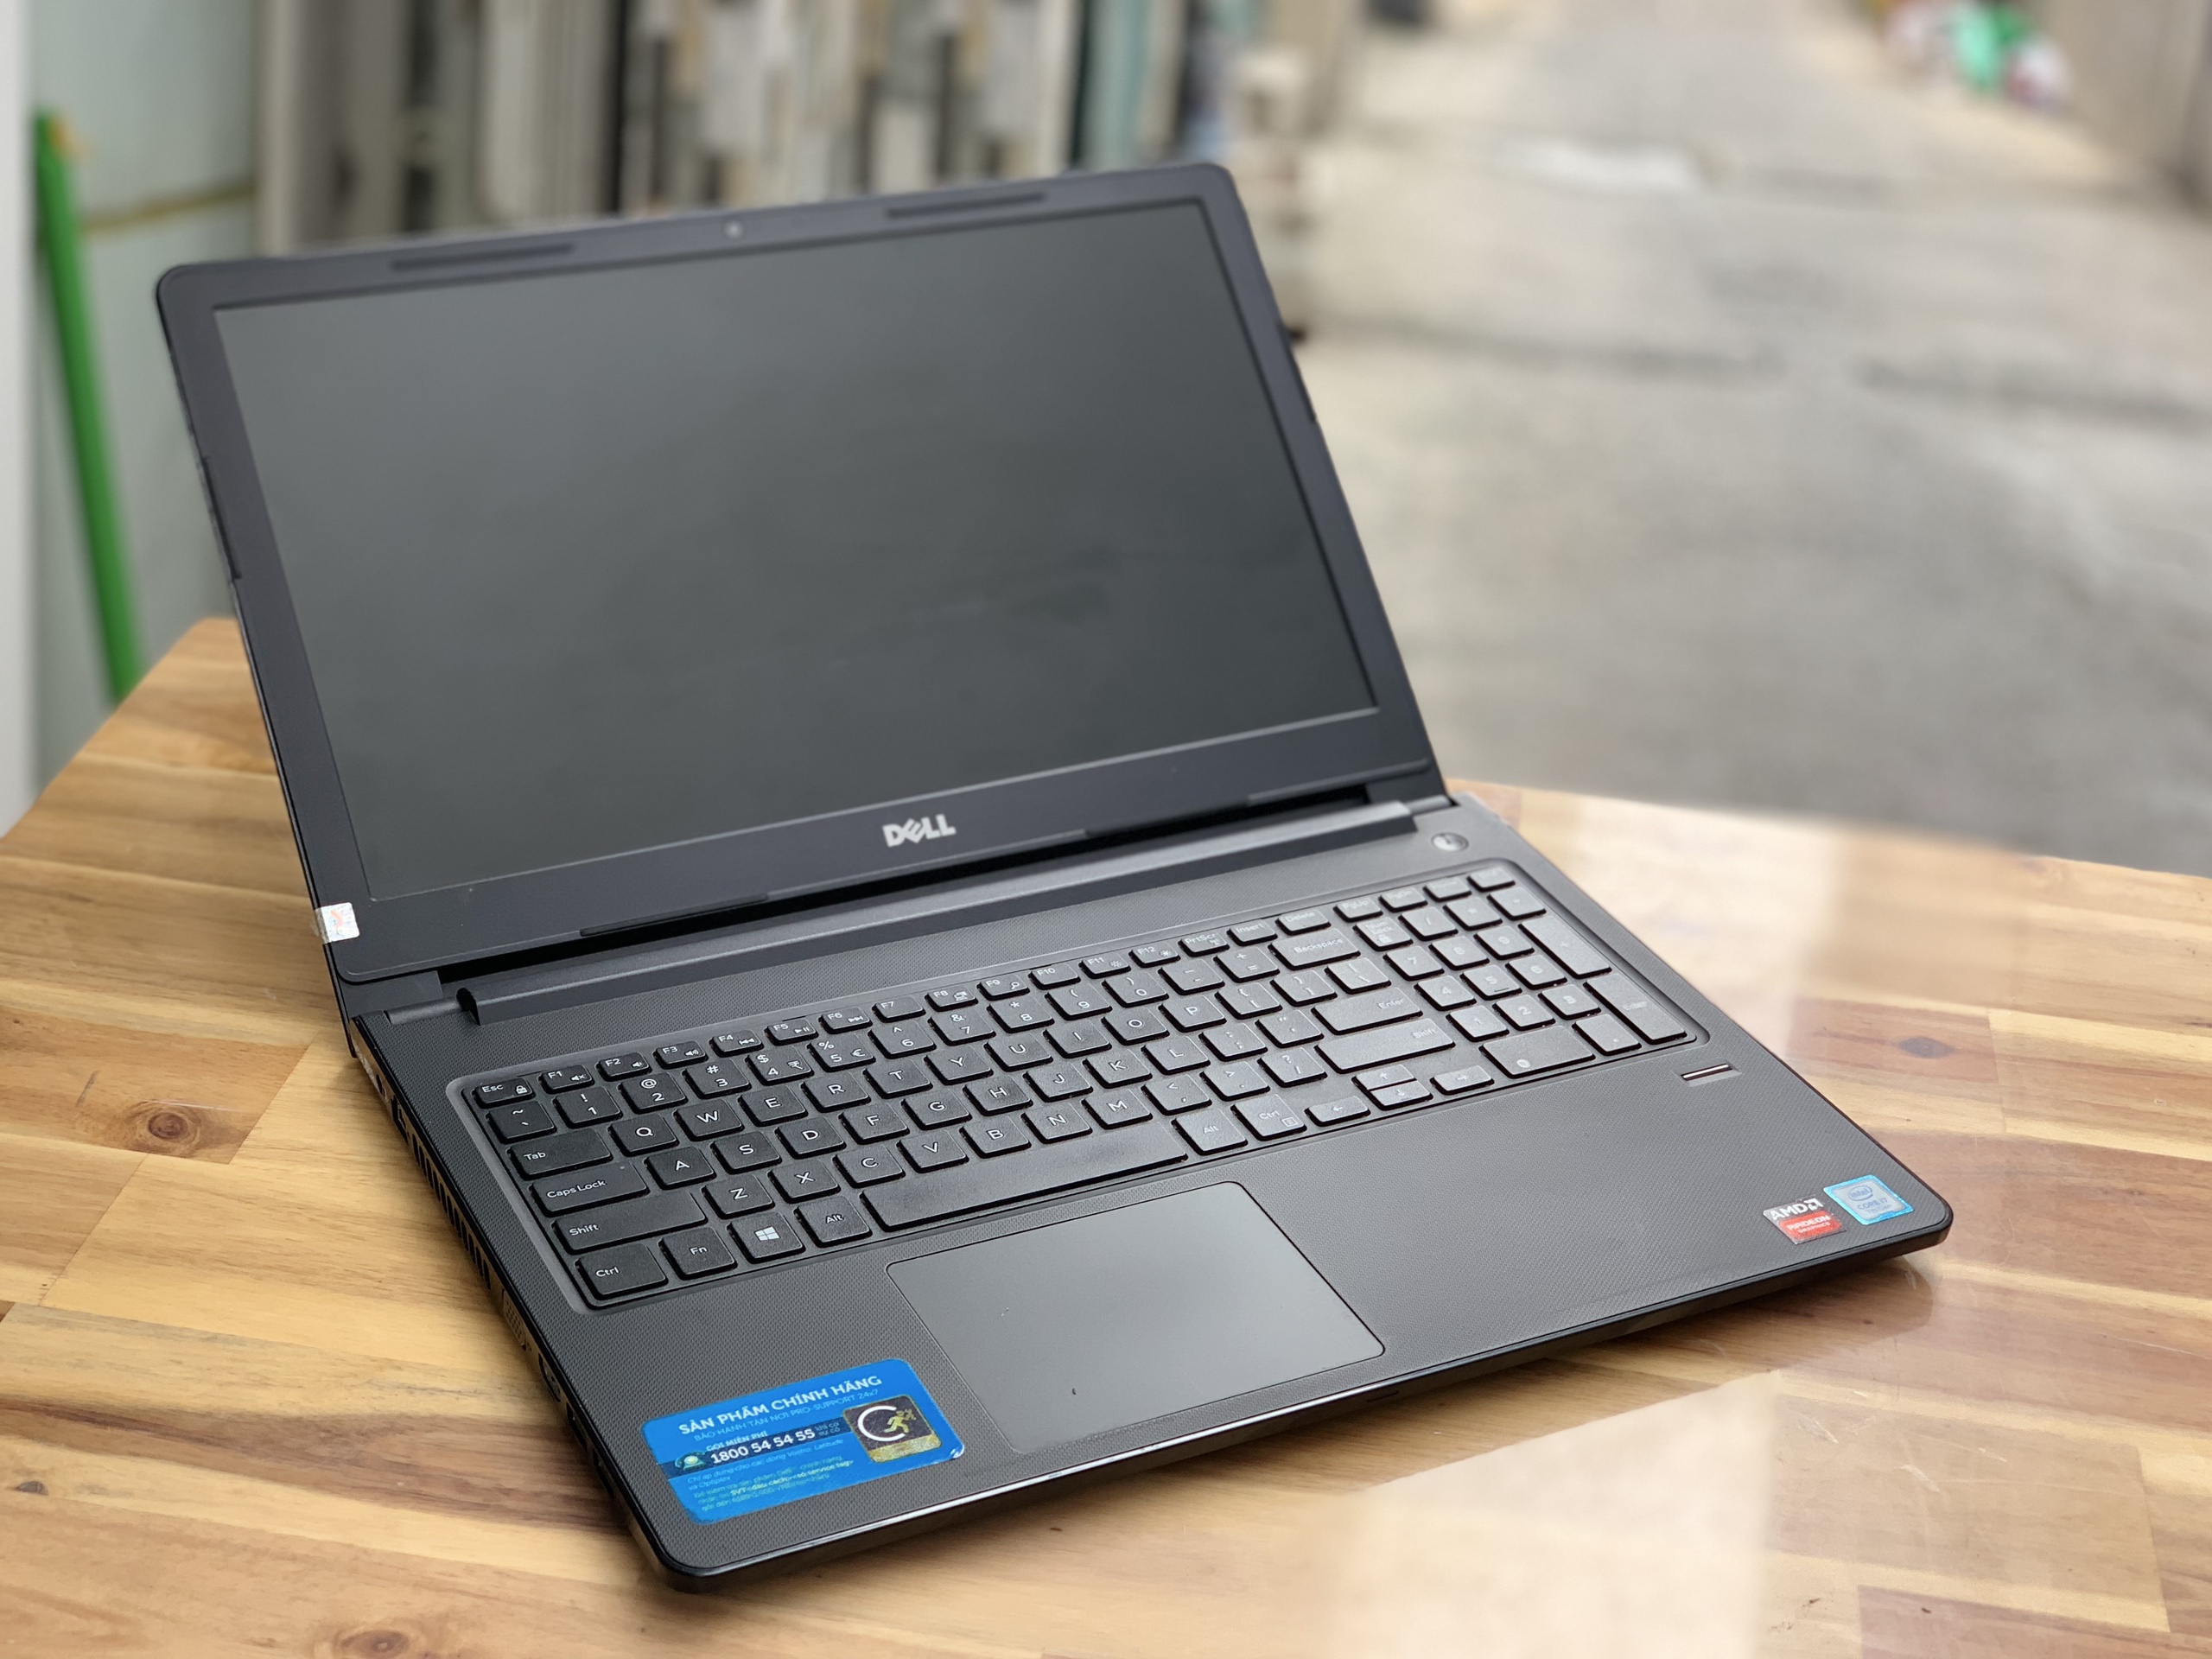 Laptop Dell N3567, i7 7500U/ 8G/ SSD128+500G/ Vga 2G/ Chuyên game đồ họa/ Finger/ Giá rẻ3